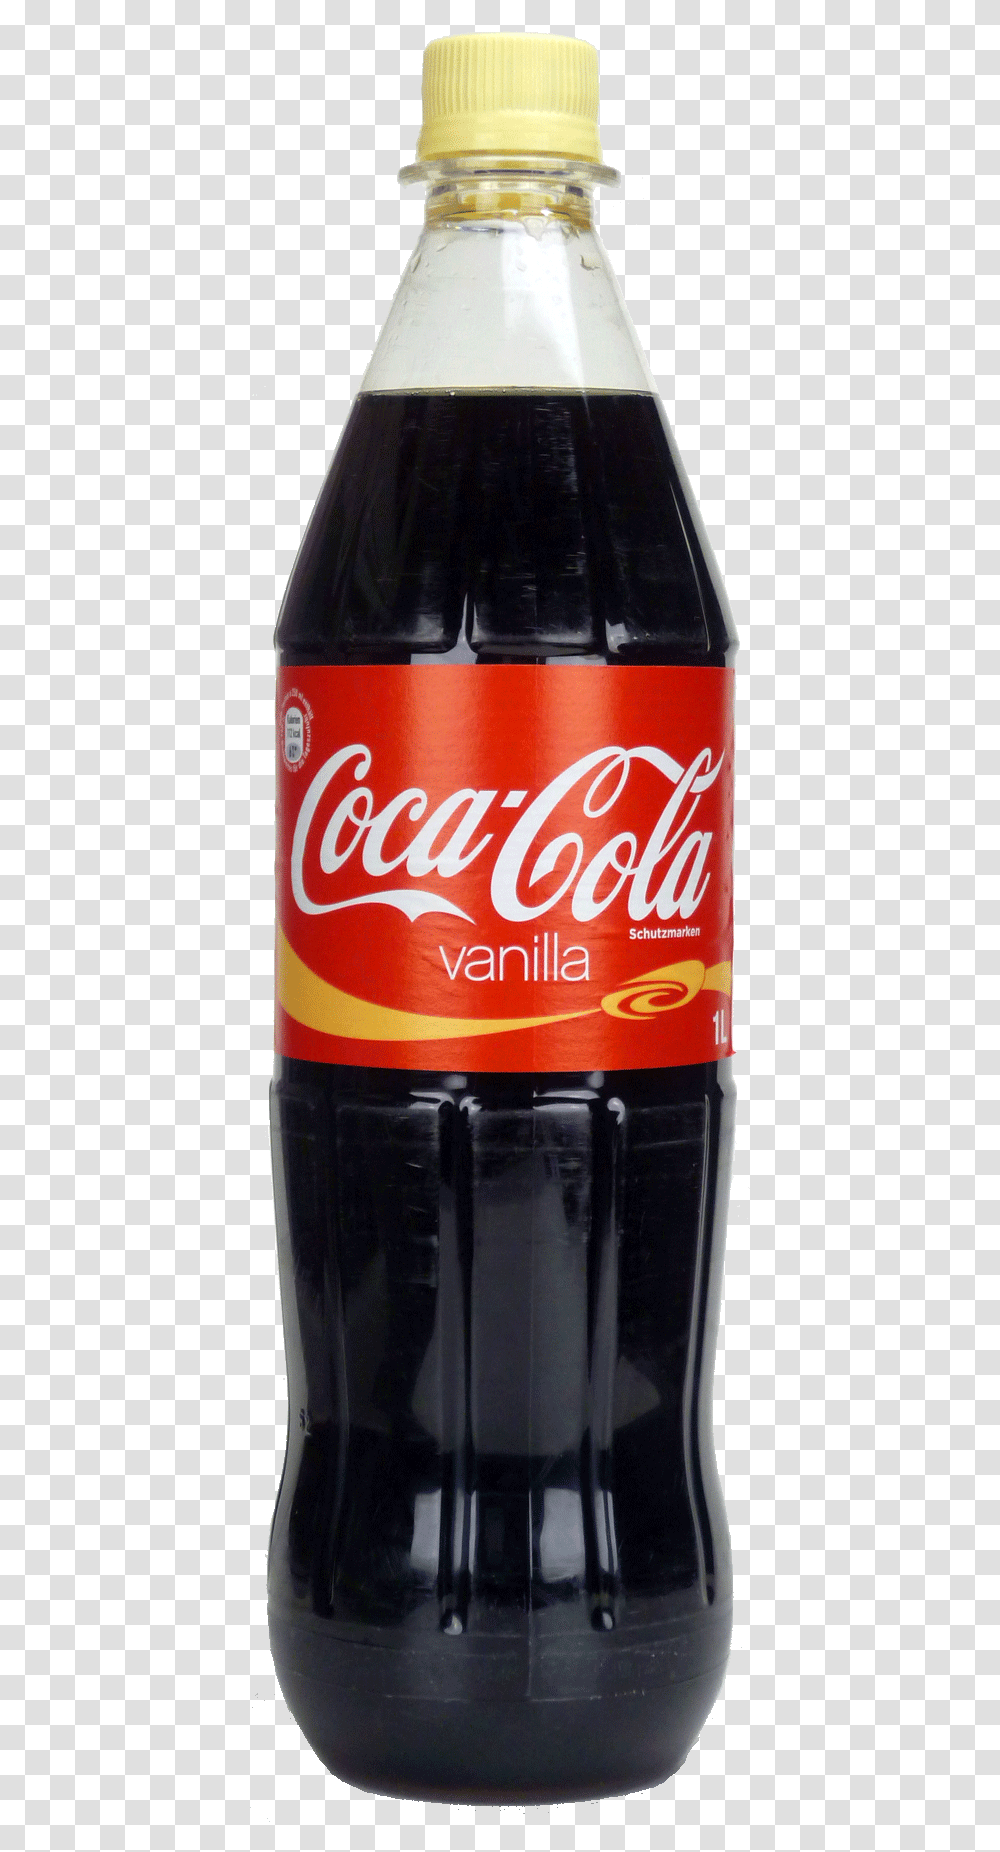 Coca Cola Bottle ImagequotTitle Coca Cola Vanilla, Coke, Beverage, Drink, Beer Transparent Png